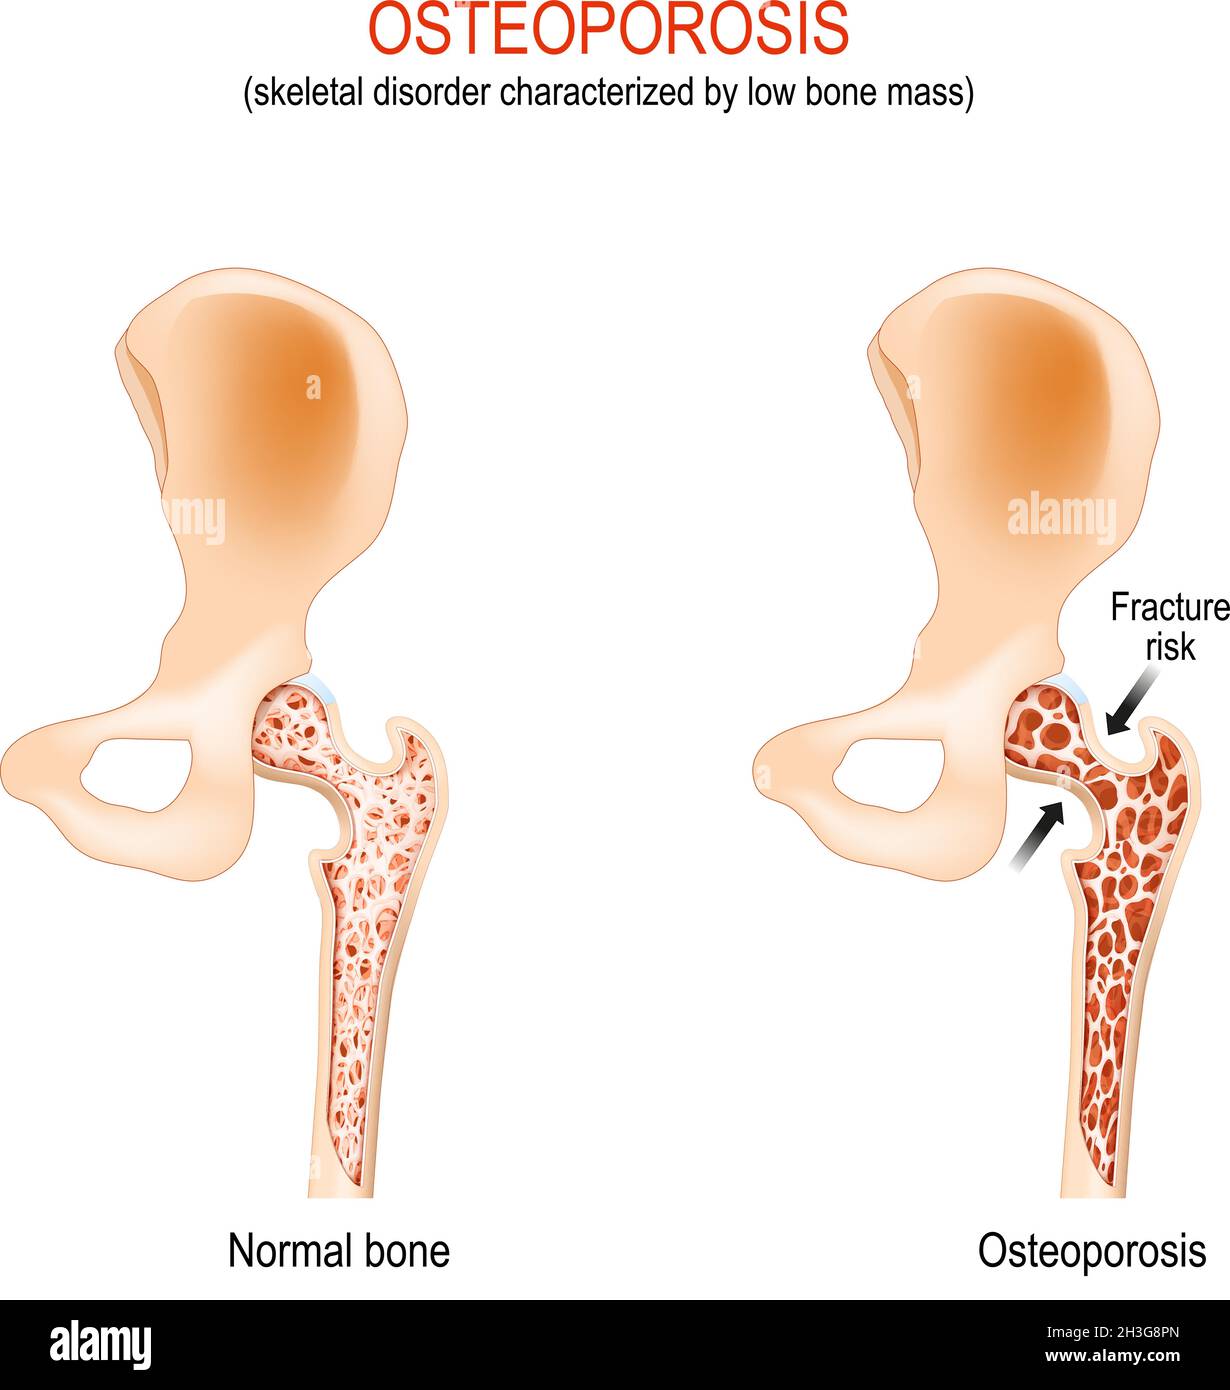 Osteoporose. Normales Hüftgelenk und Knochen mit Skelettstörung, die durch geringe Knochenmasse gekennzeichnet ist. Femurfrakturrisiko. Differenz und Vergleich Stock Vektor